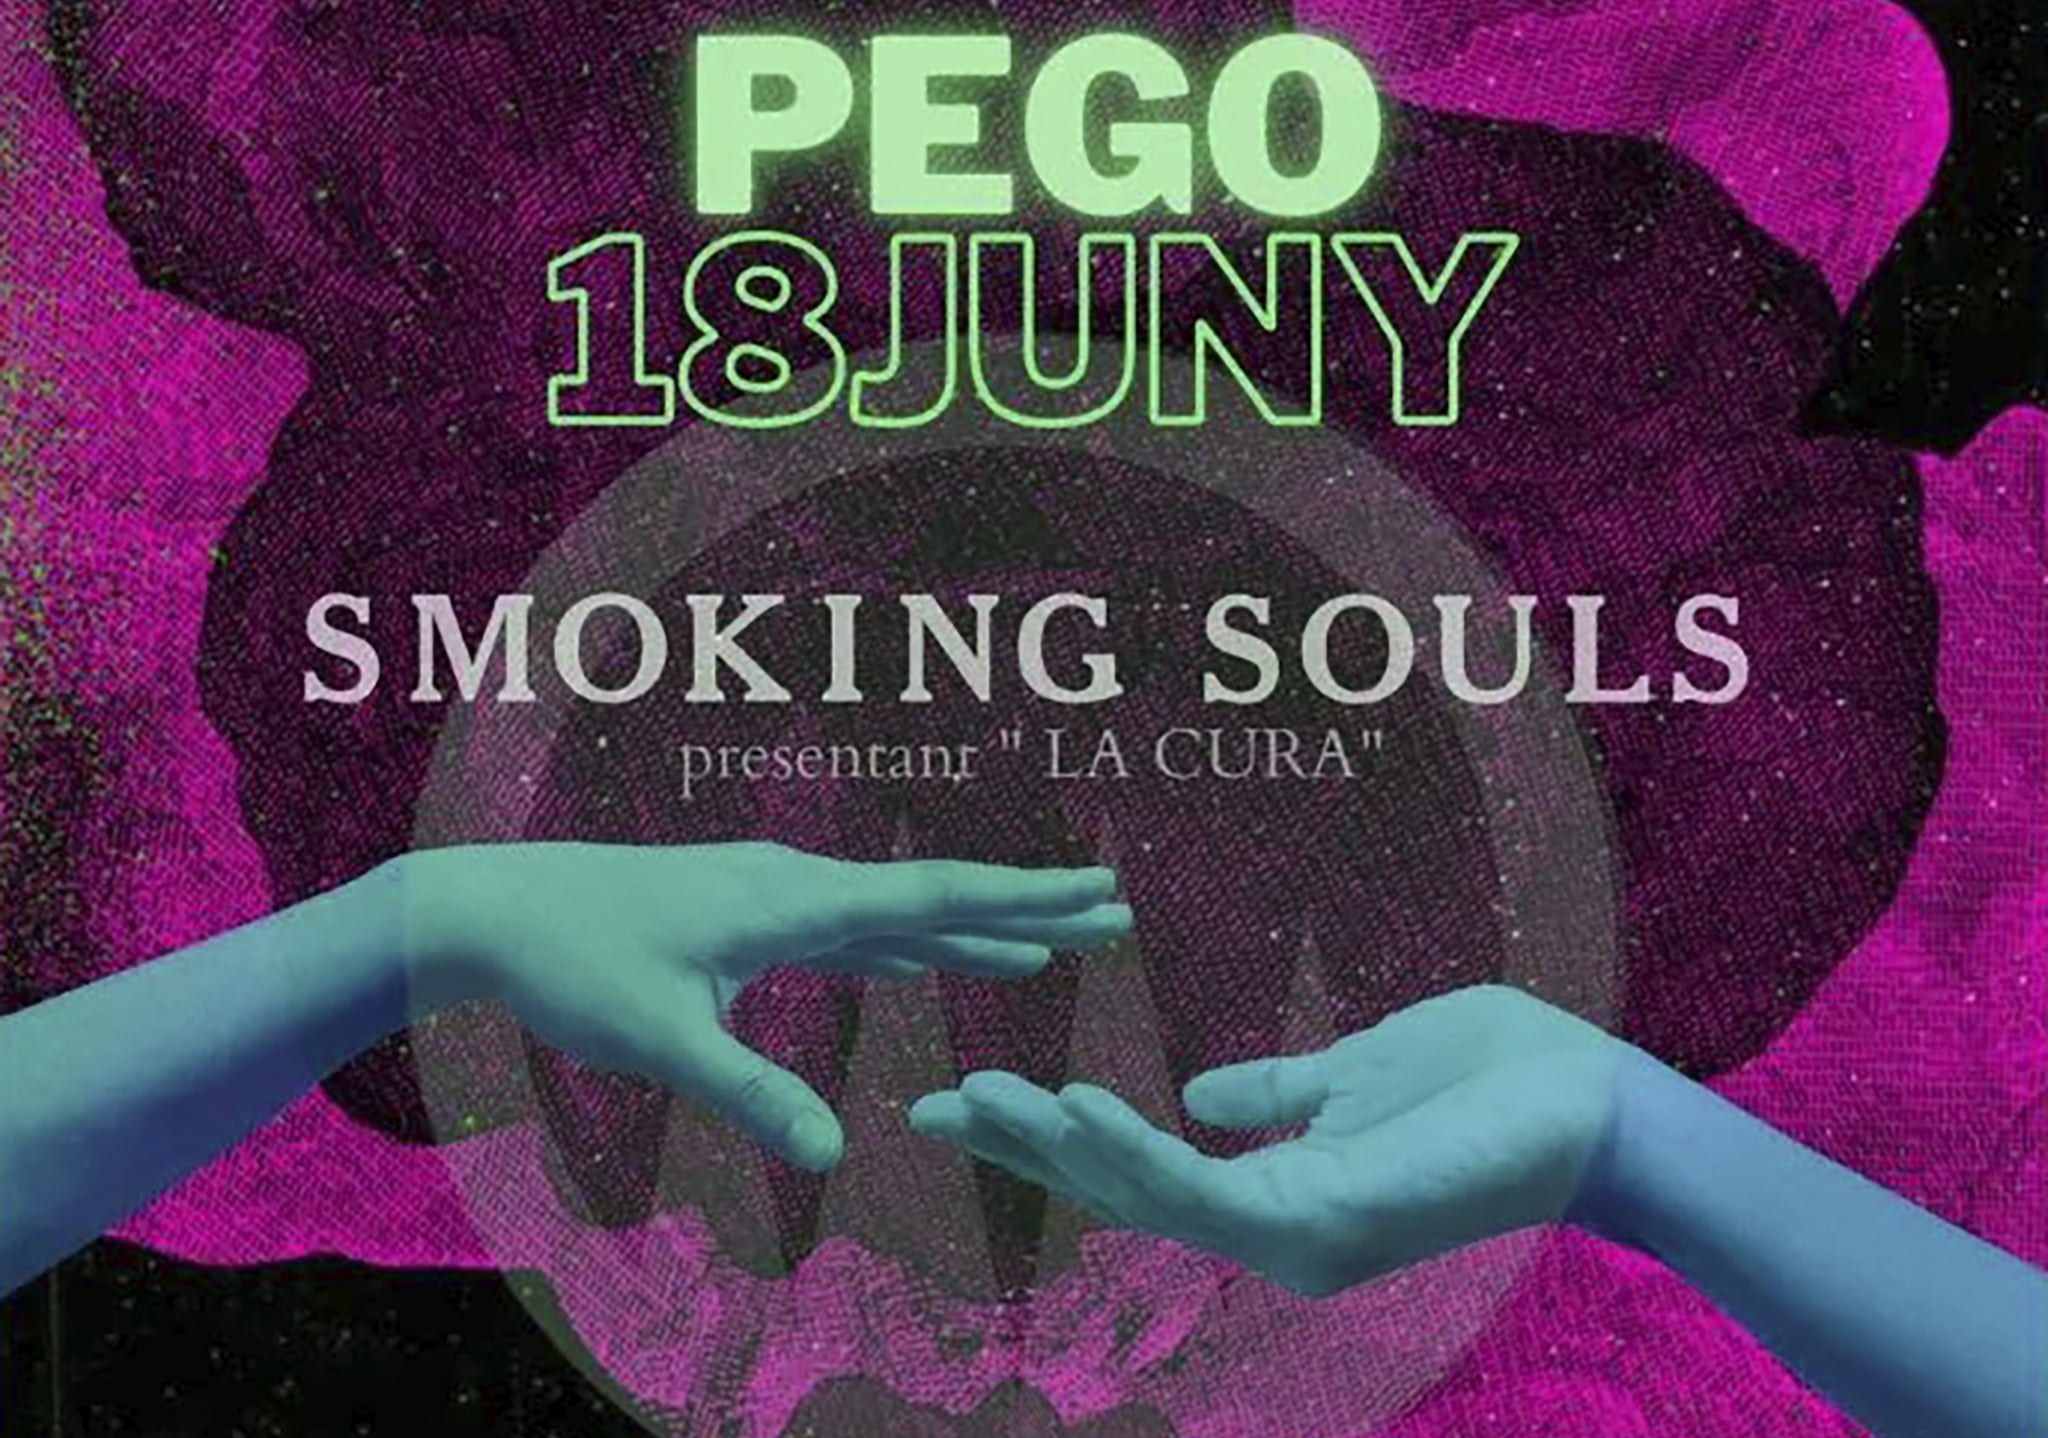 Smoking Souls, Kela, Boikot y Dj Cate en Pego